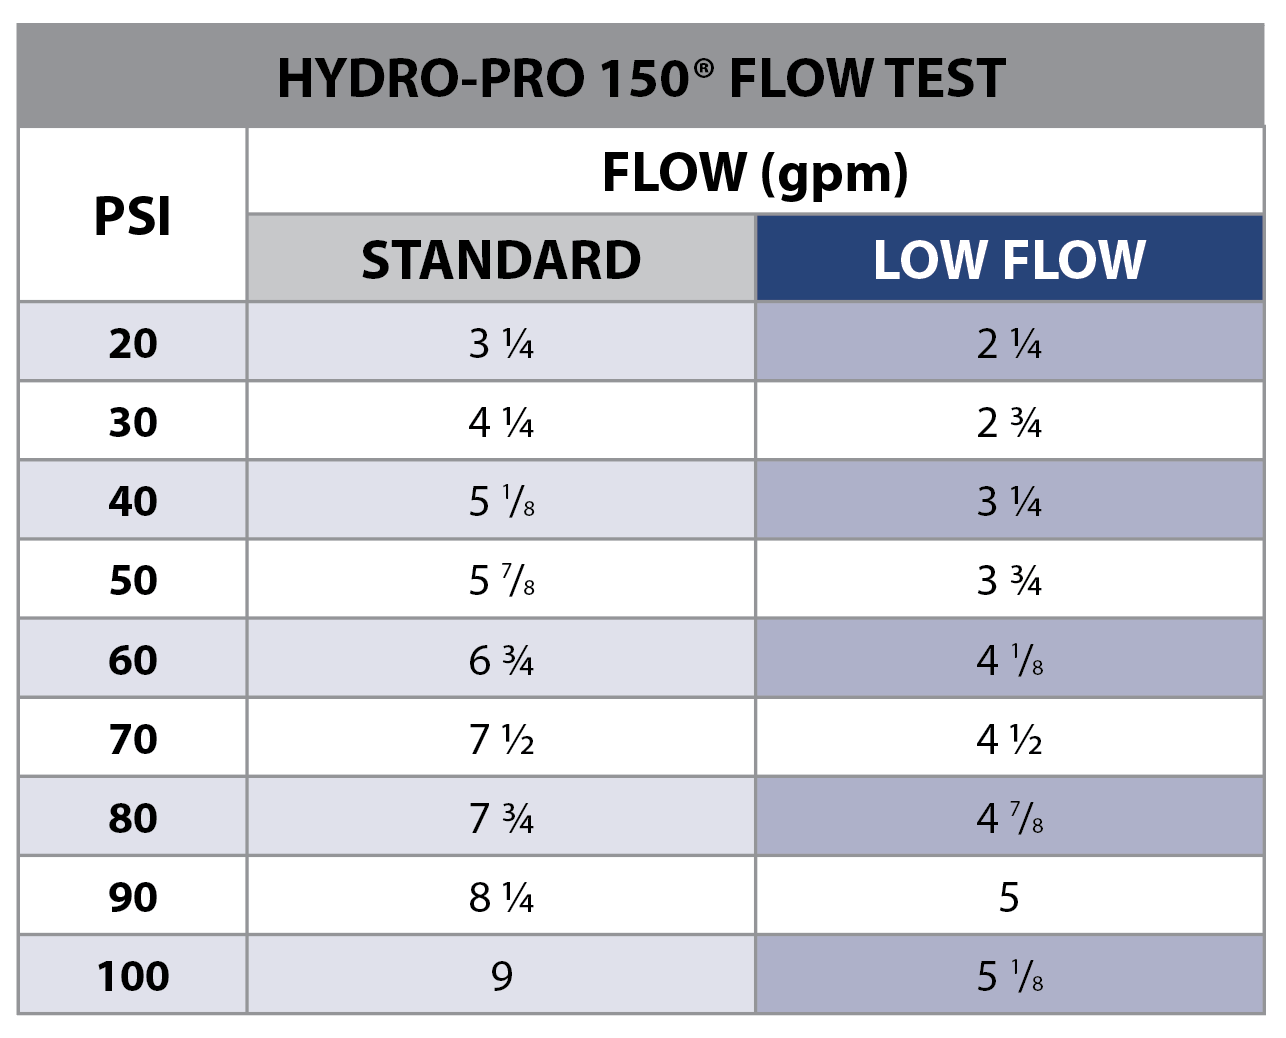 Low Flow Hydro-Pro 150®